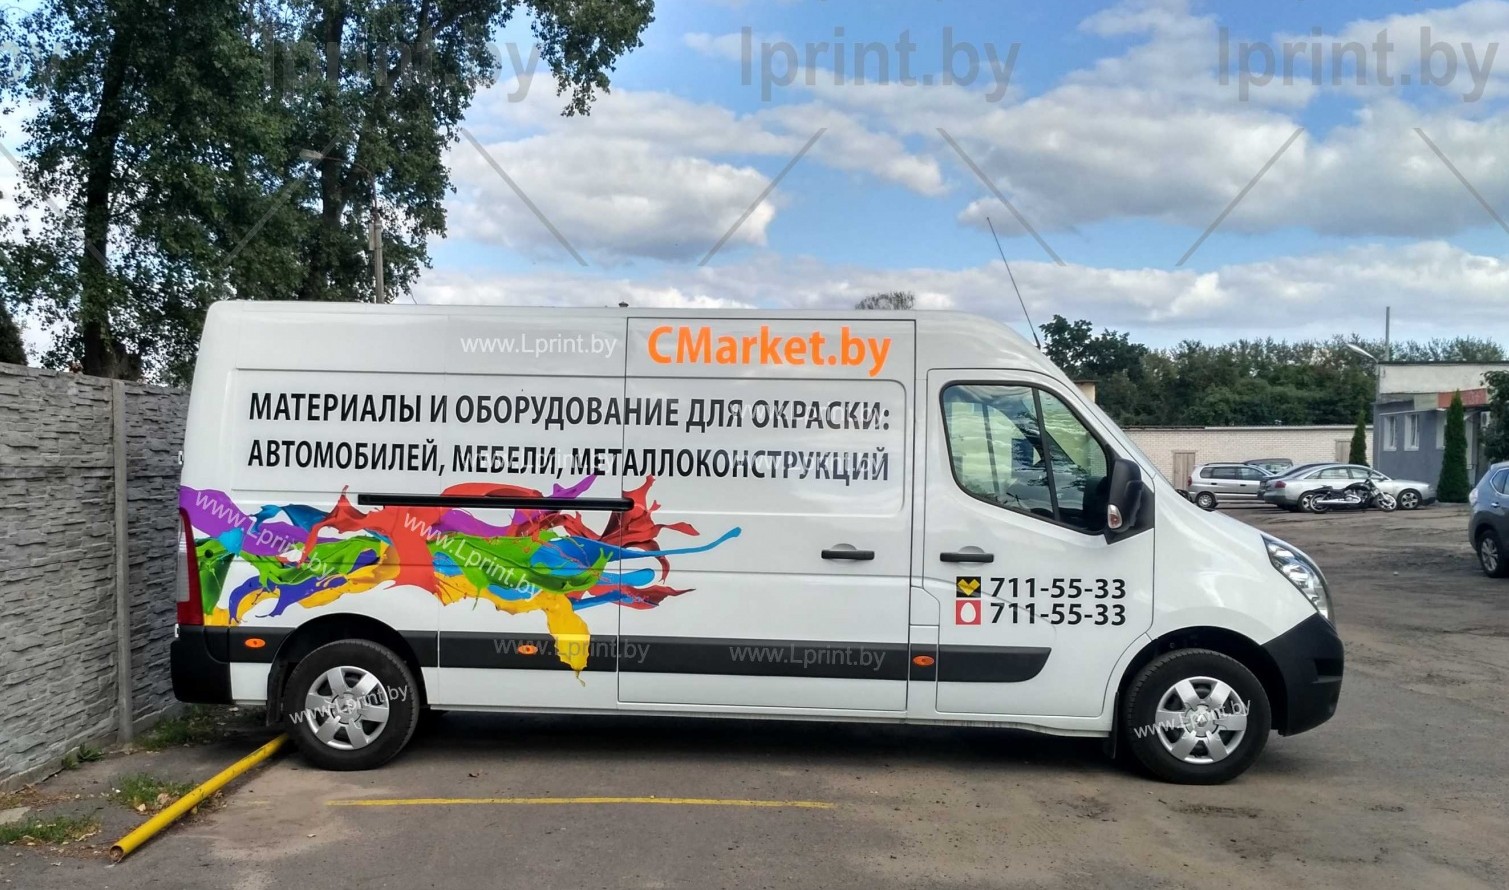 Брендирование транспорта грузовоя машина Минск